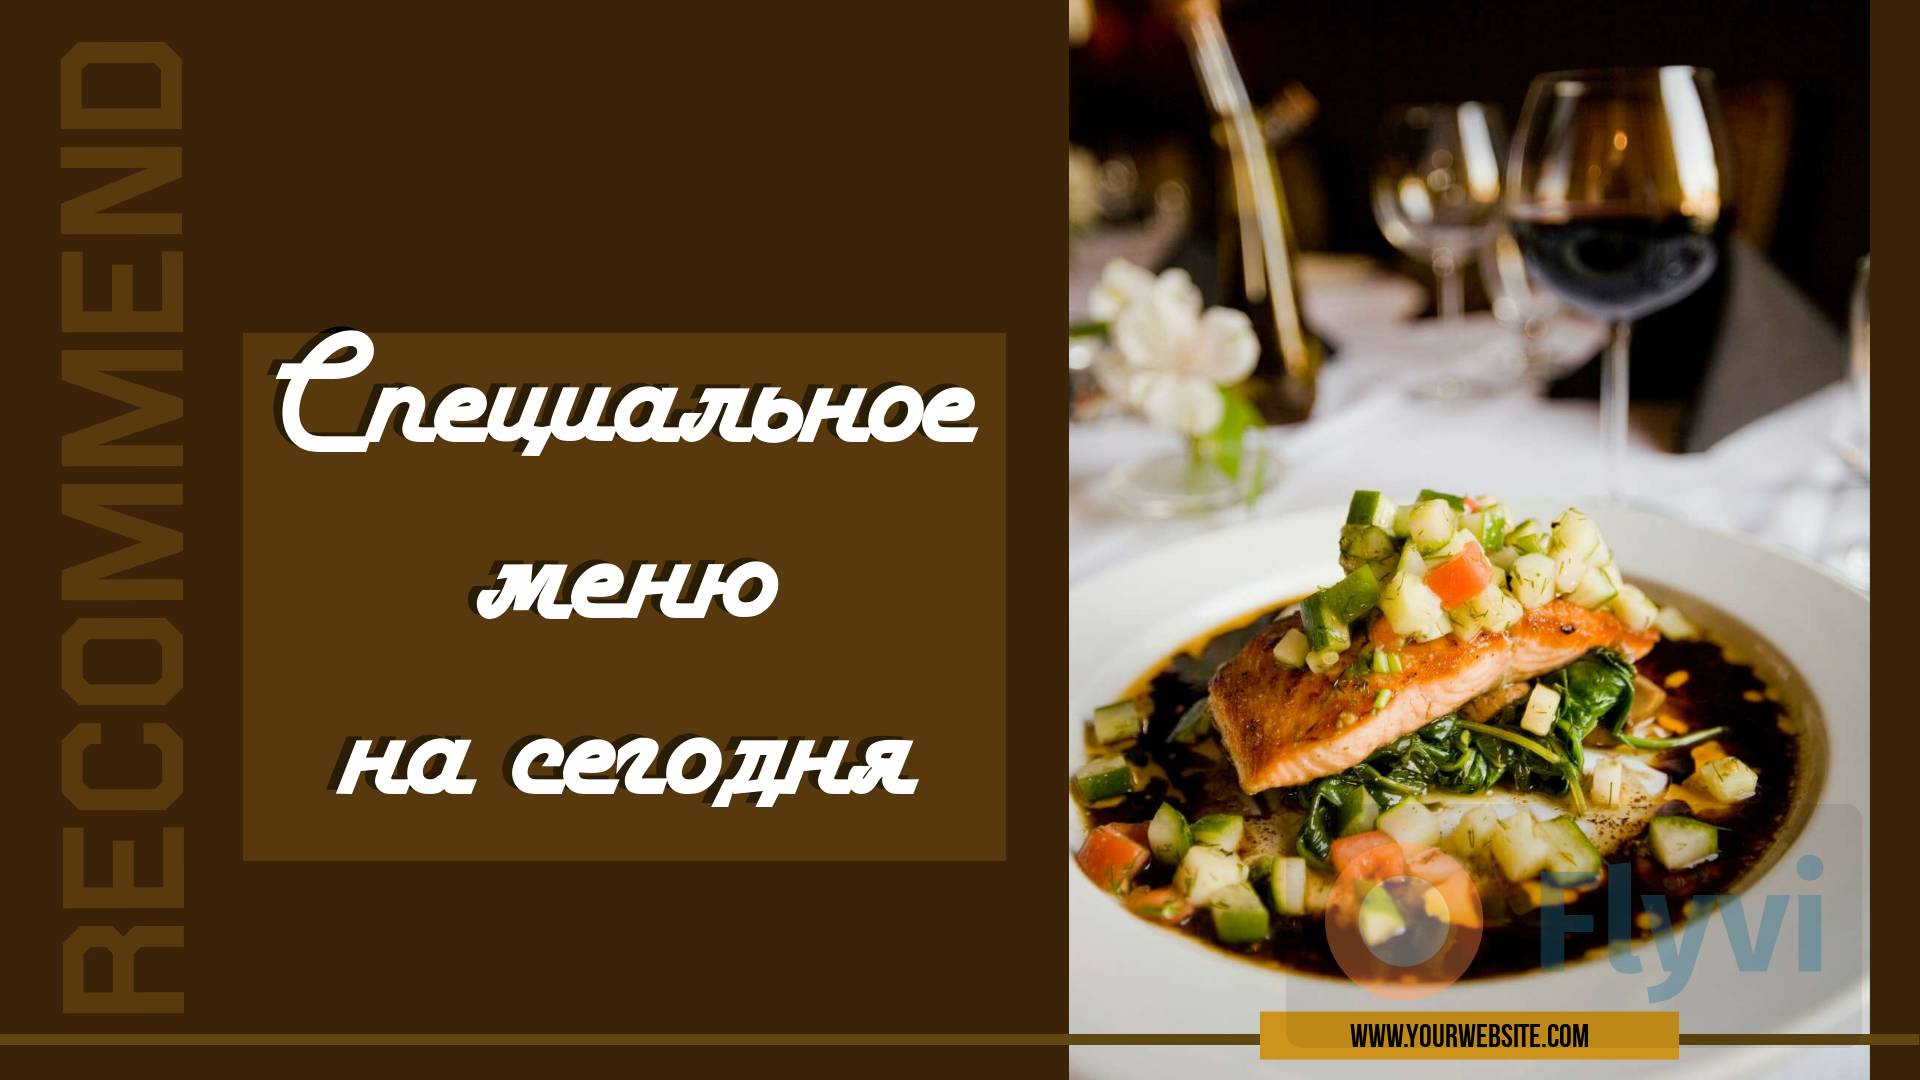 Сочный стейк из красной рыбы на подушке из пассированных овощей  в стильной публикации для соцсетей ресторана